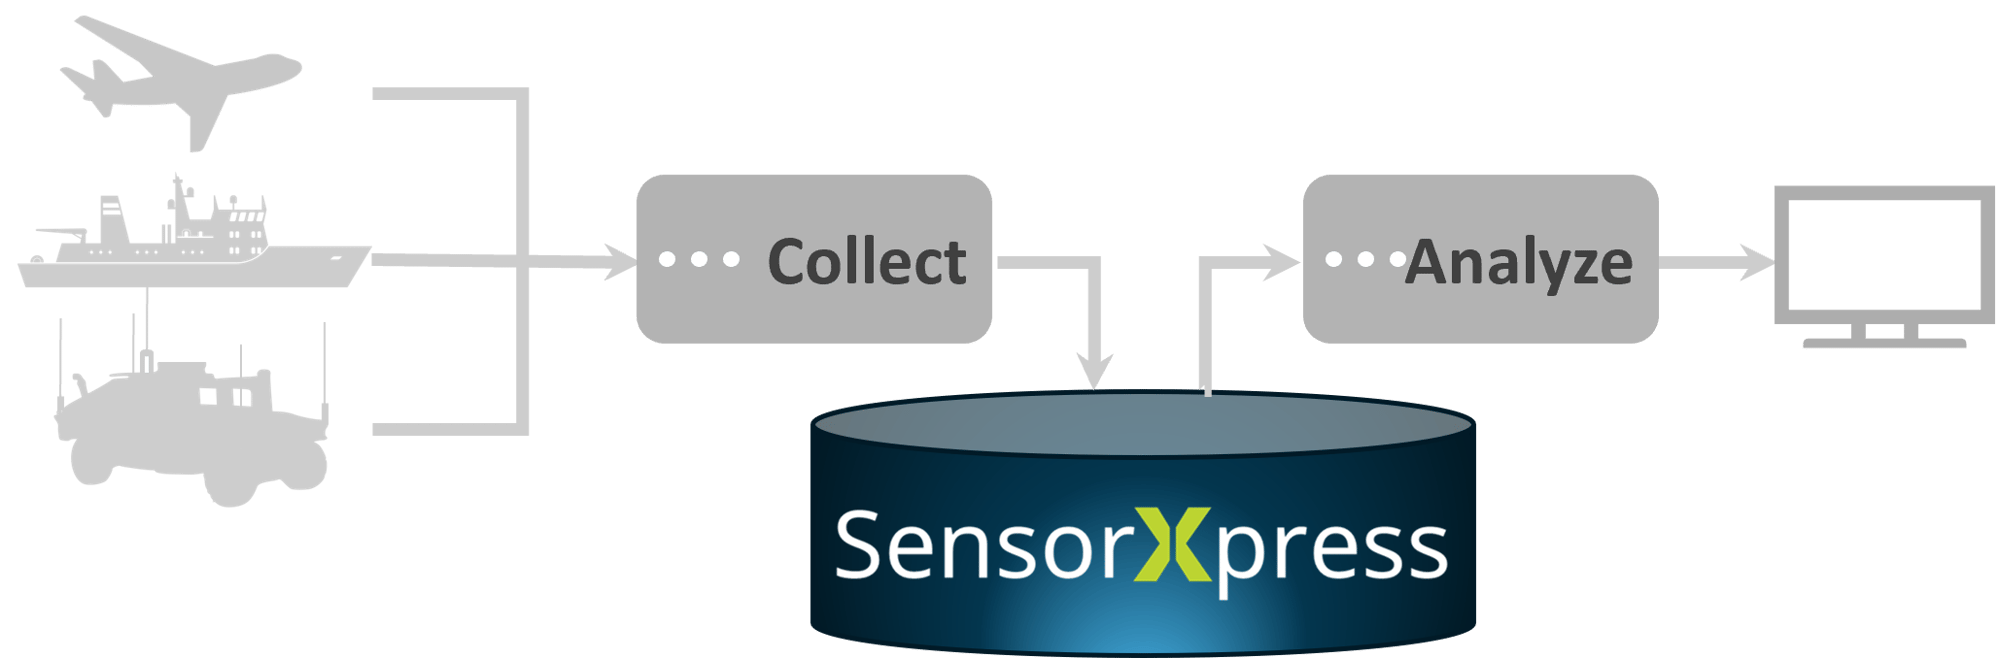 SensorXpress Graphic-4